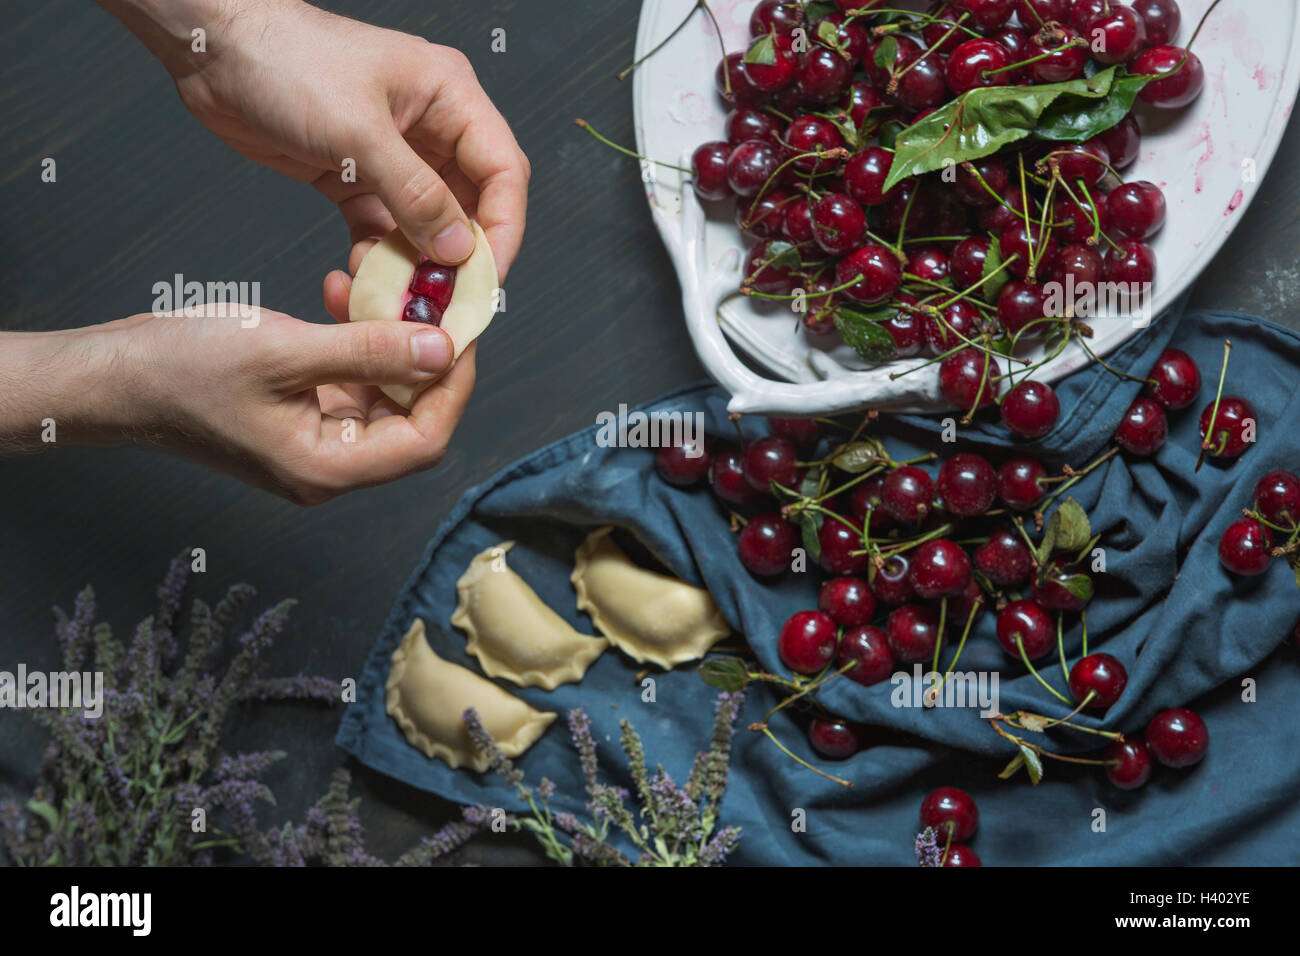 Bild von Händen Knödel mit Kirschen am Tisch füllen beschnitten Stockfoto